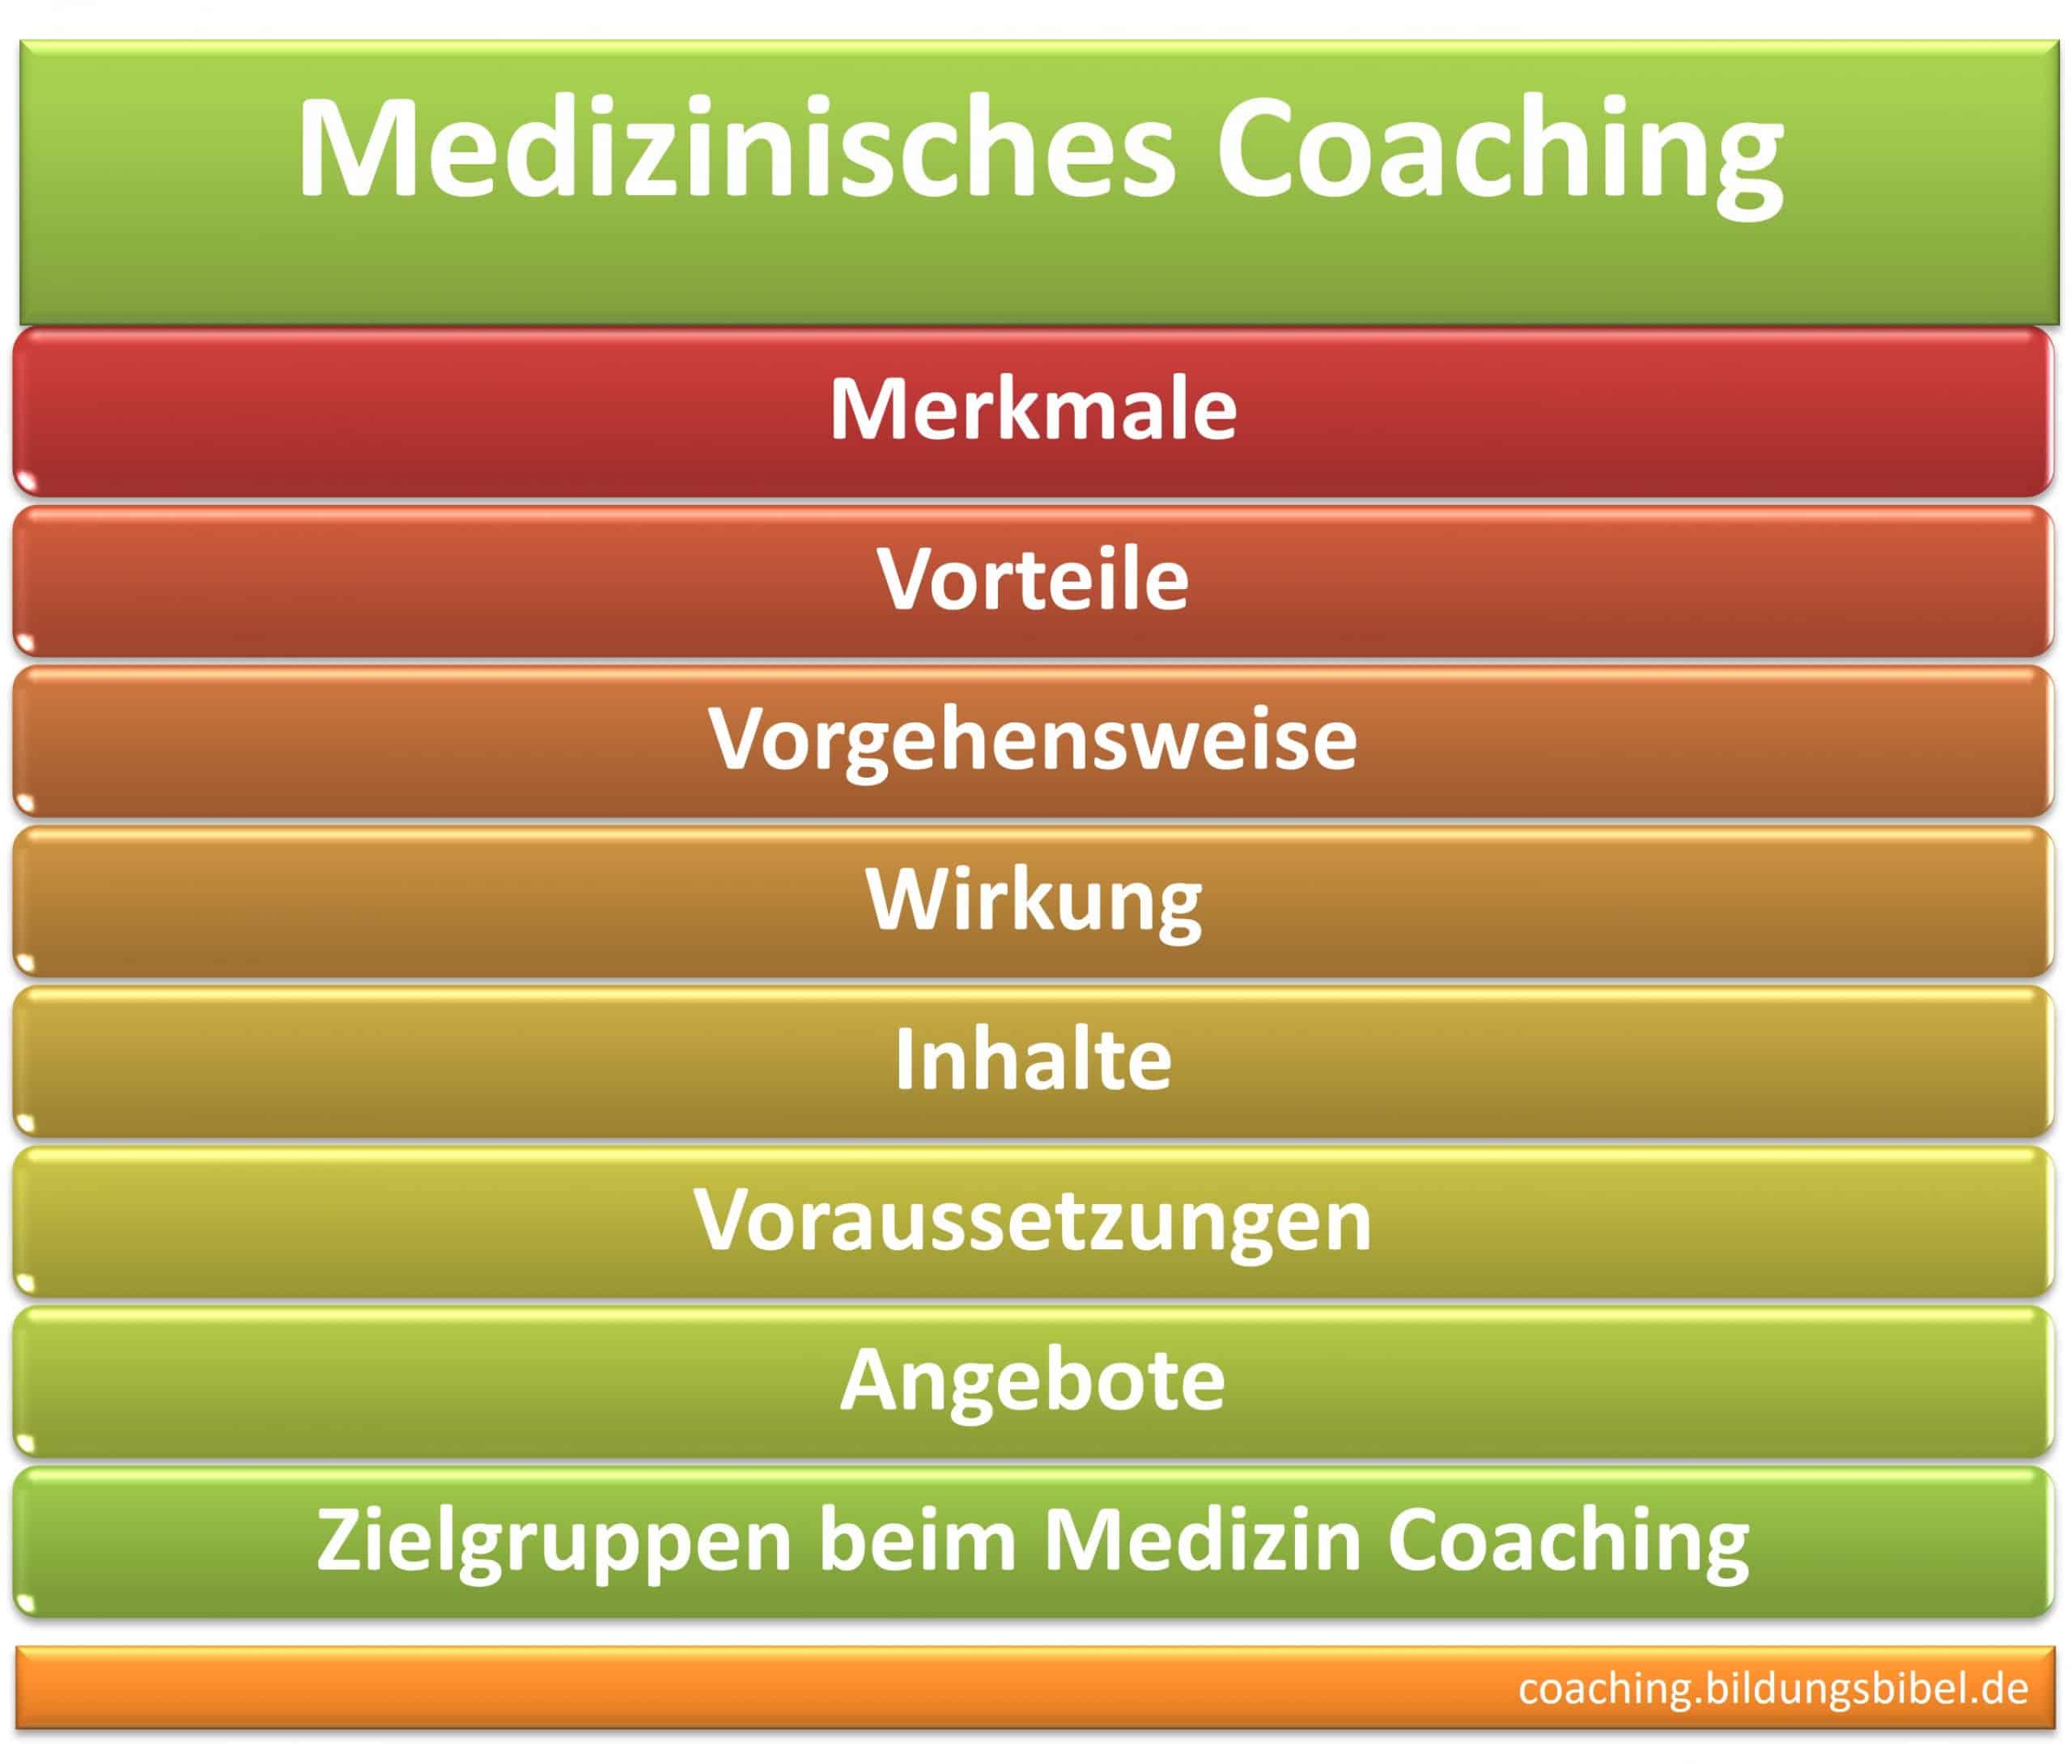 Medizinisches Coaching, Merkmale, Vorteile, Vorgehensweise, Wirkung, Inhalte, Voraussetzungen, Angebote und Zielgruppen beim Medizin Coaching.